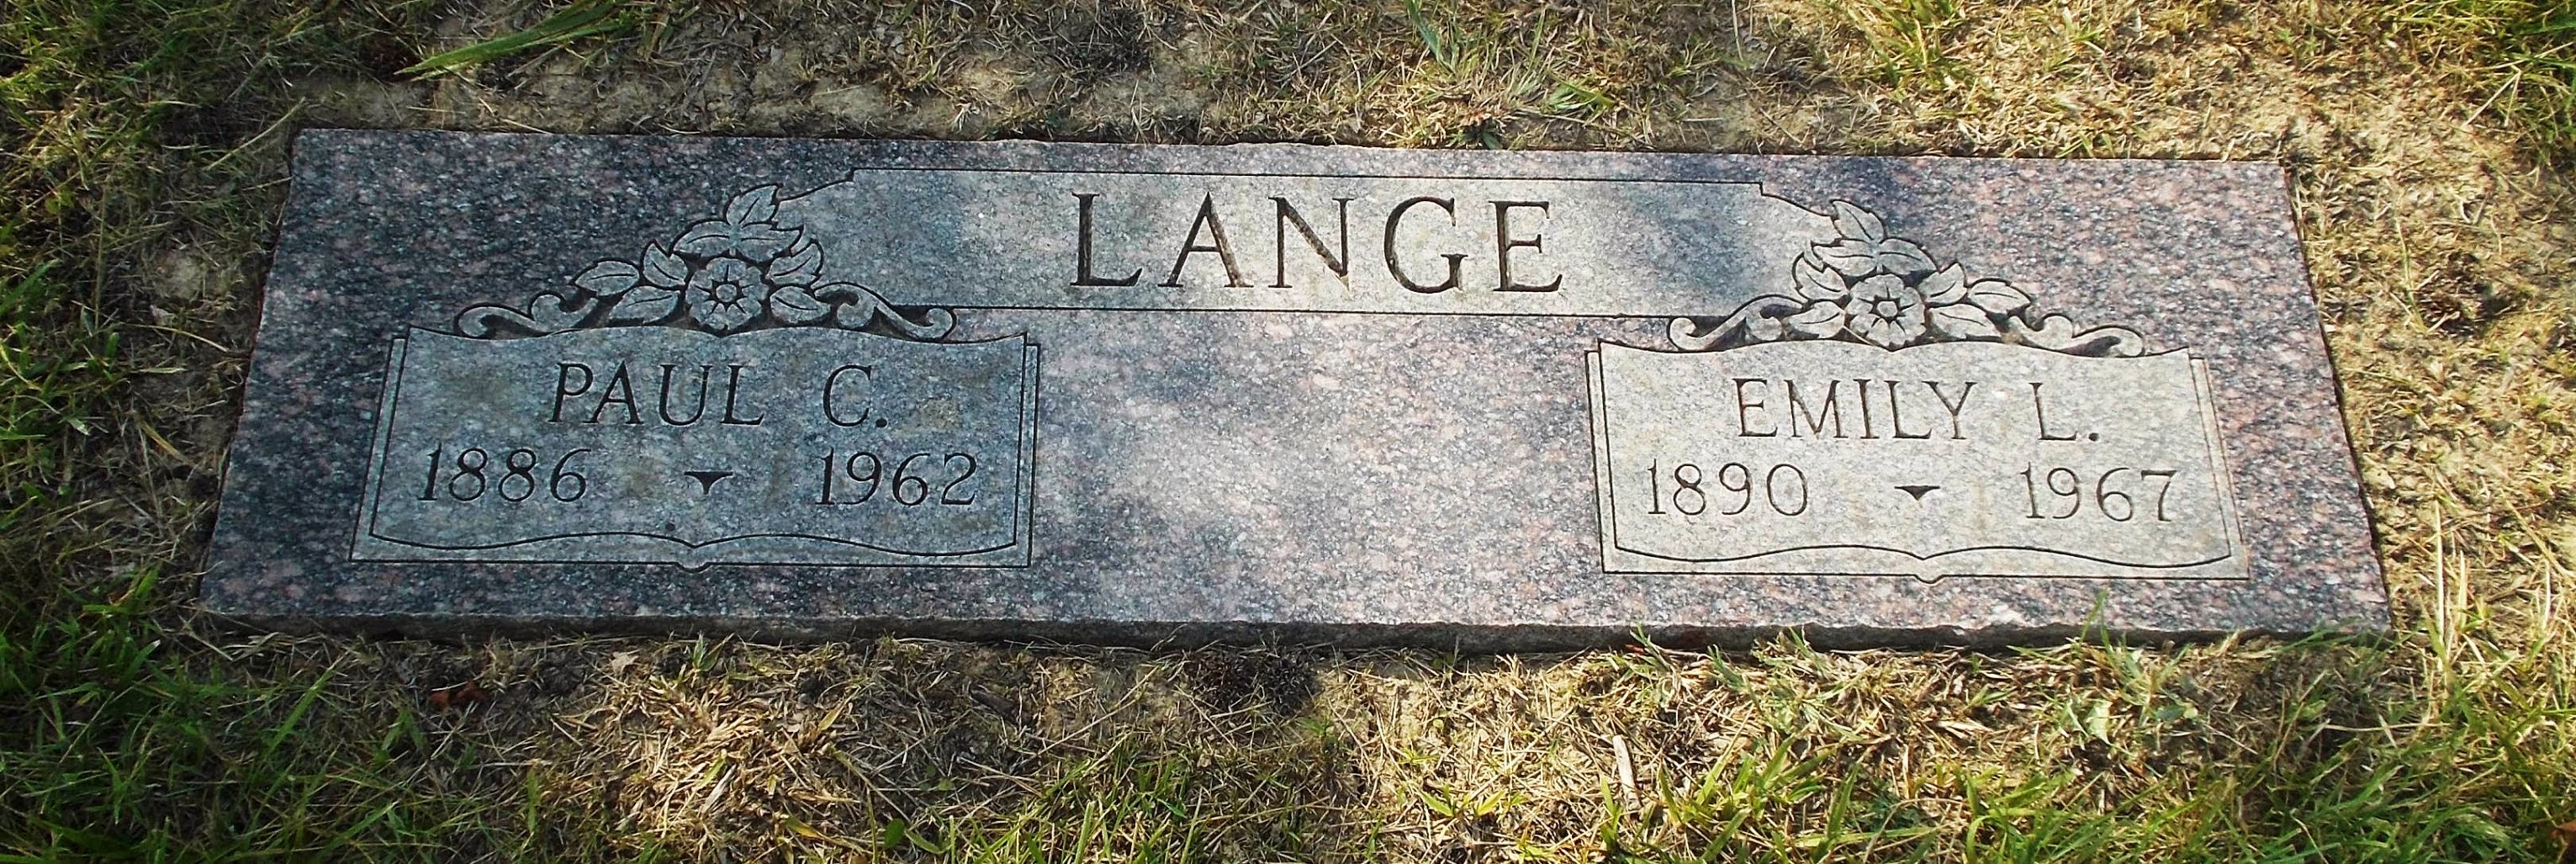 Paul C Lange